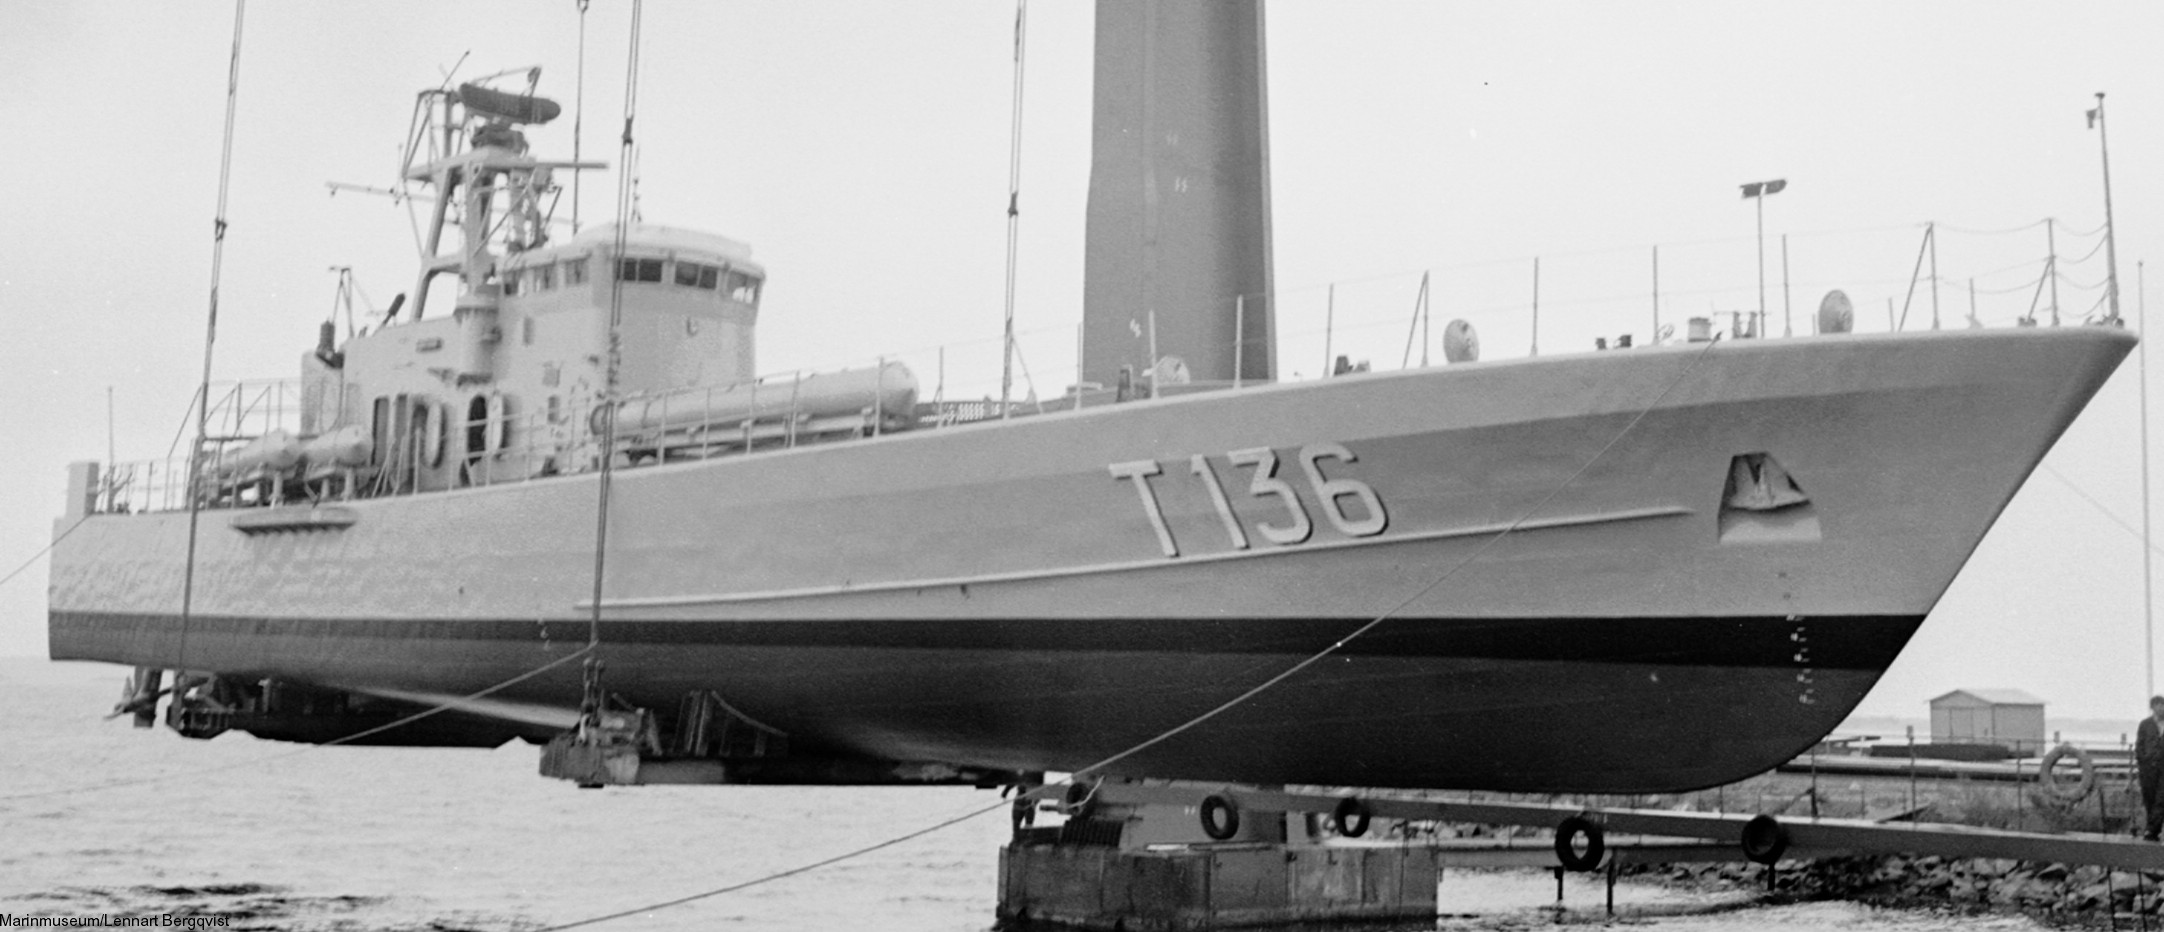 t136 västervik hswms hms norrköping class fast attack craft torpedo missile patrol boat swedish navy svenska marinen 06